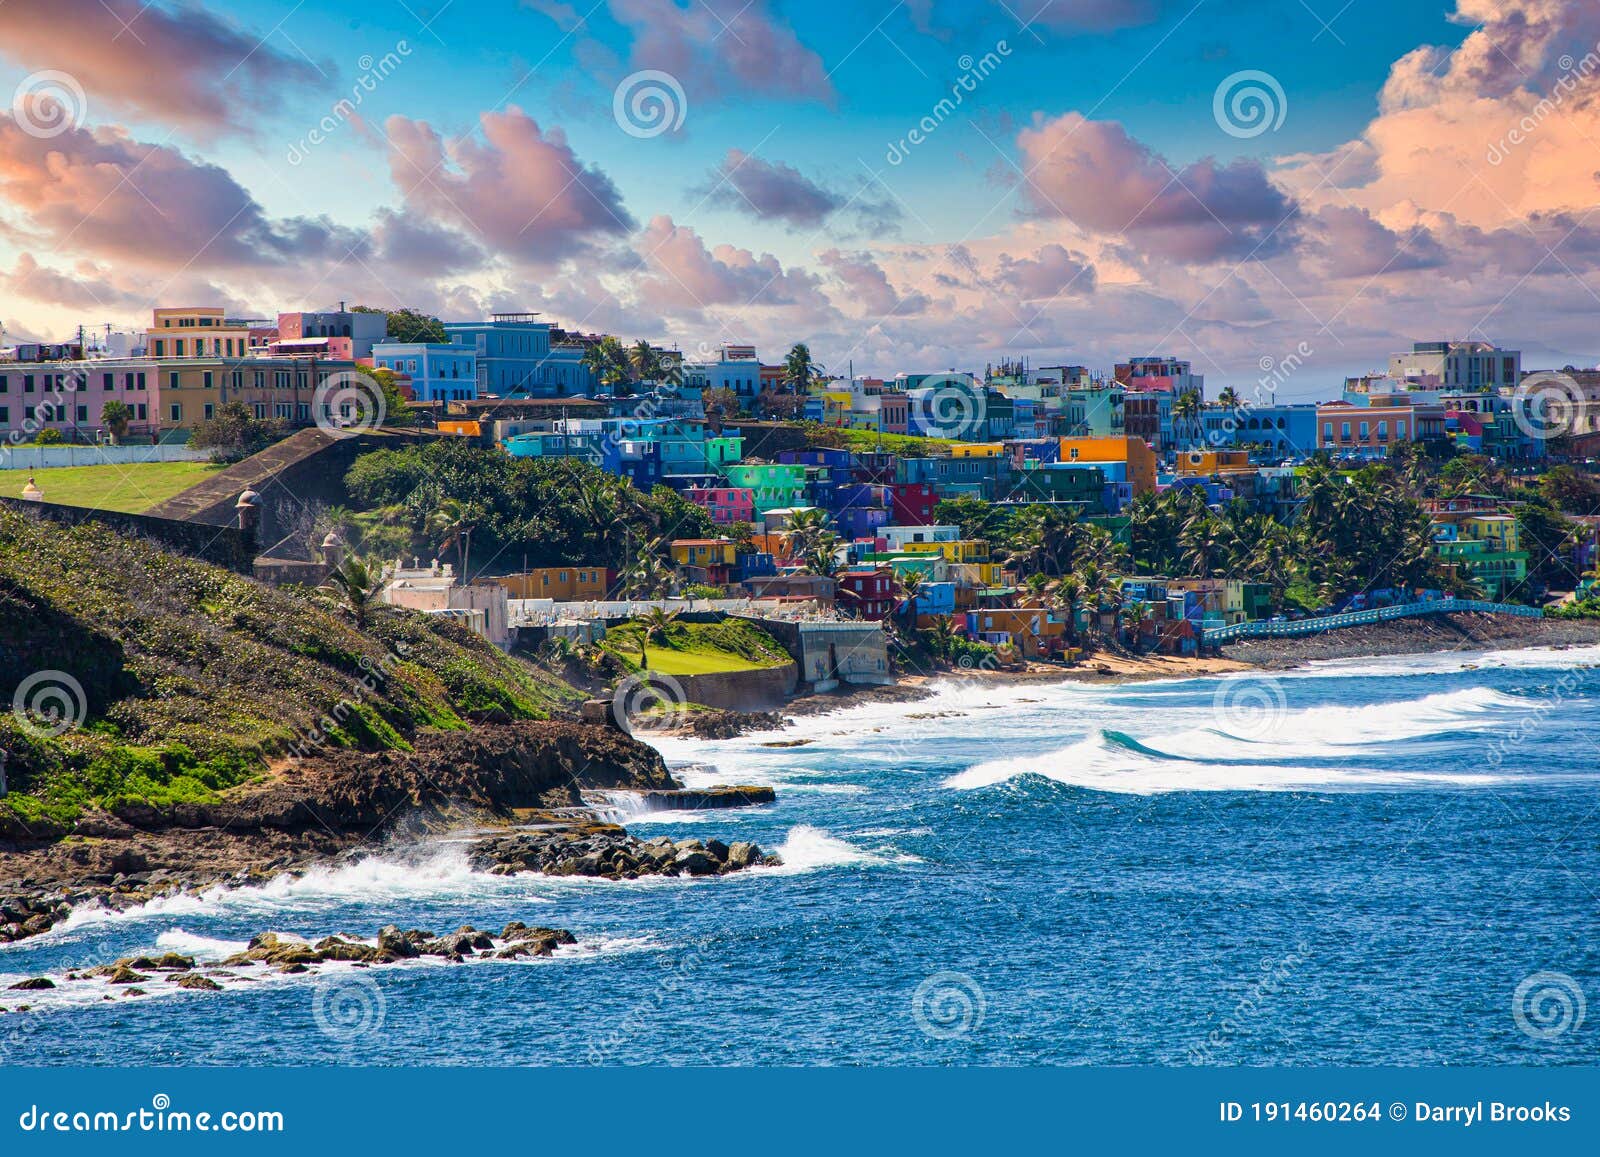 探索波多黎各的迷人魅力 | GoUSA